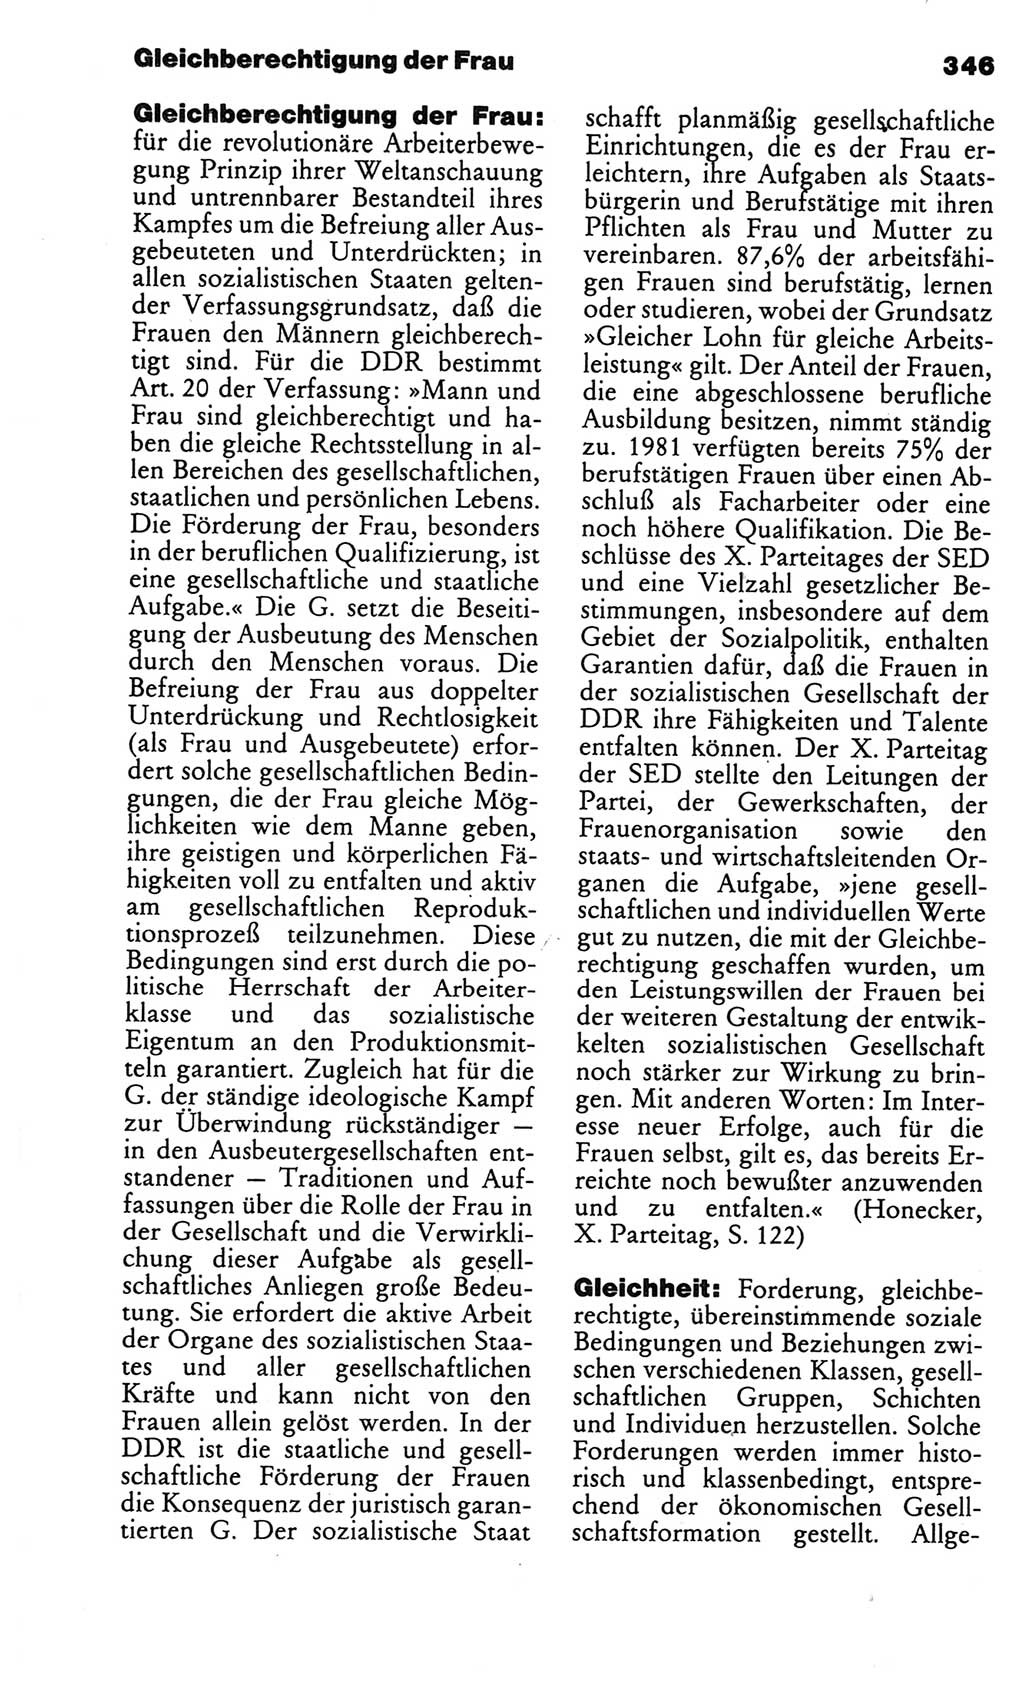 Kleines politisches Wörterbuch [Deutsche Demokratische Republik (DDR)] 1986, Seite 346 (Kl. pol. Wb. DDR 1986, S. 346)